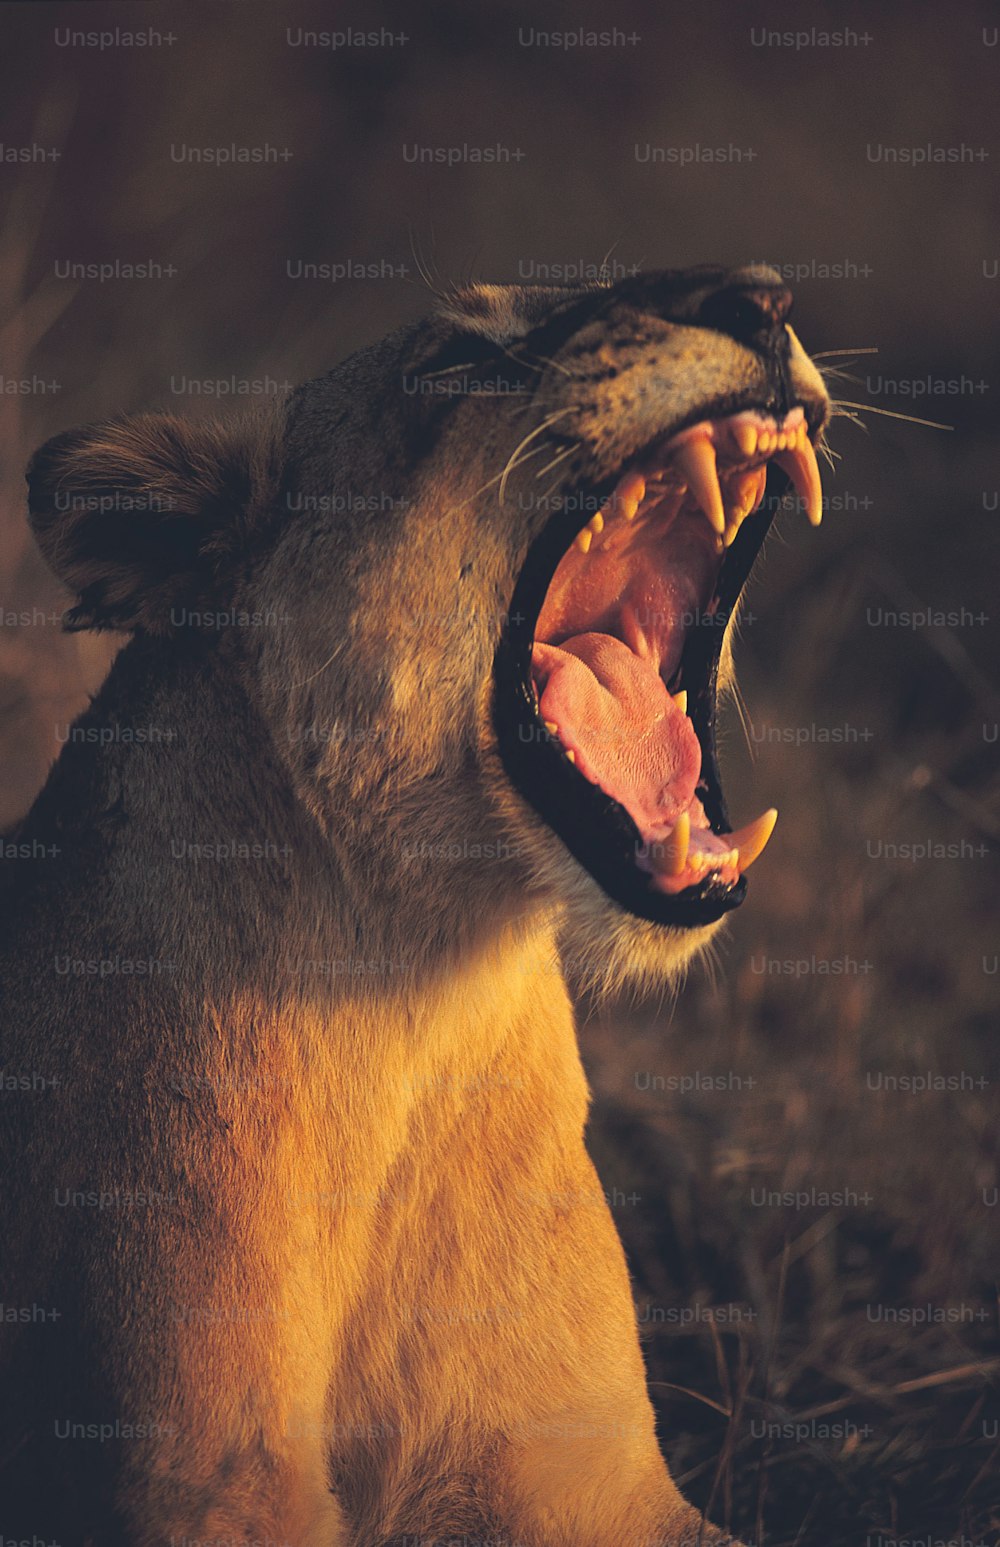 Más de 30,000 imágenes de leones rugientes | Descargar imágenes gratis en  Unsplash